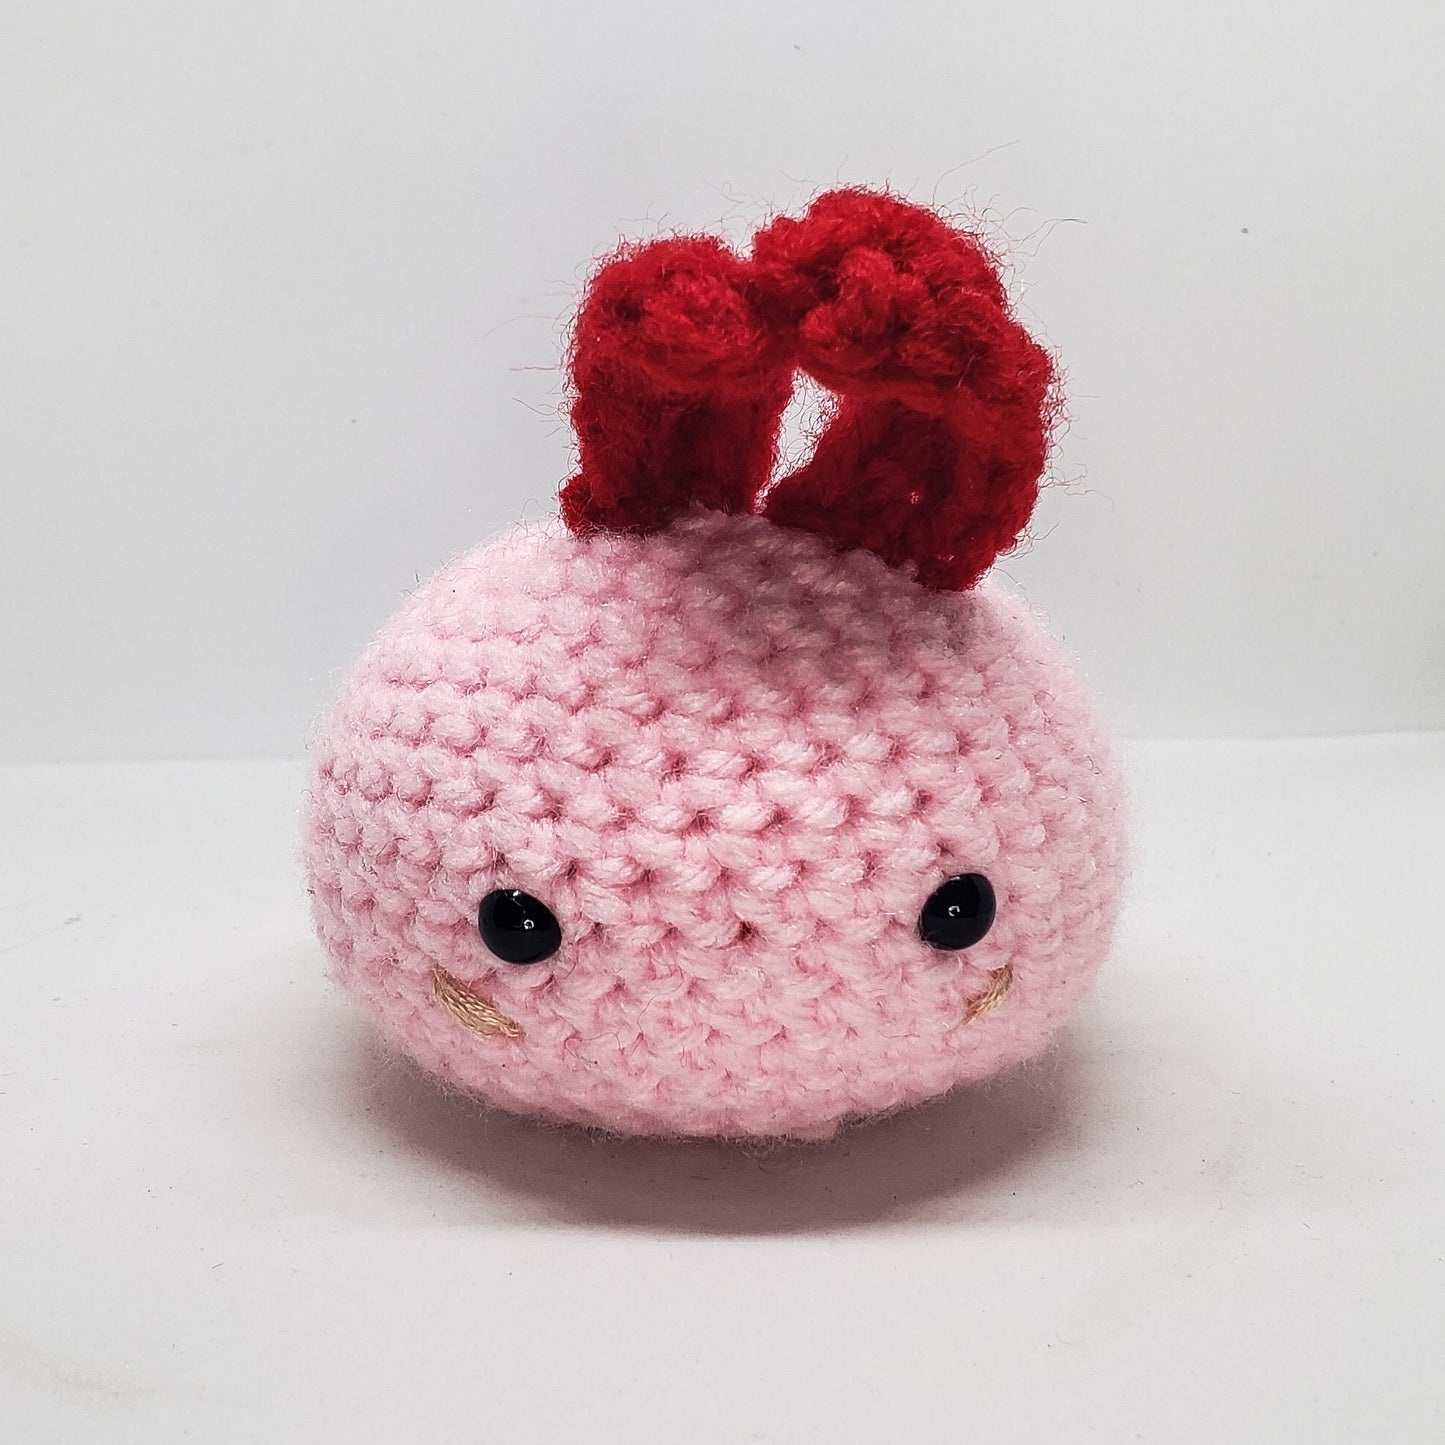 Moochi Love Bunnies - Crochet Amigurumis